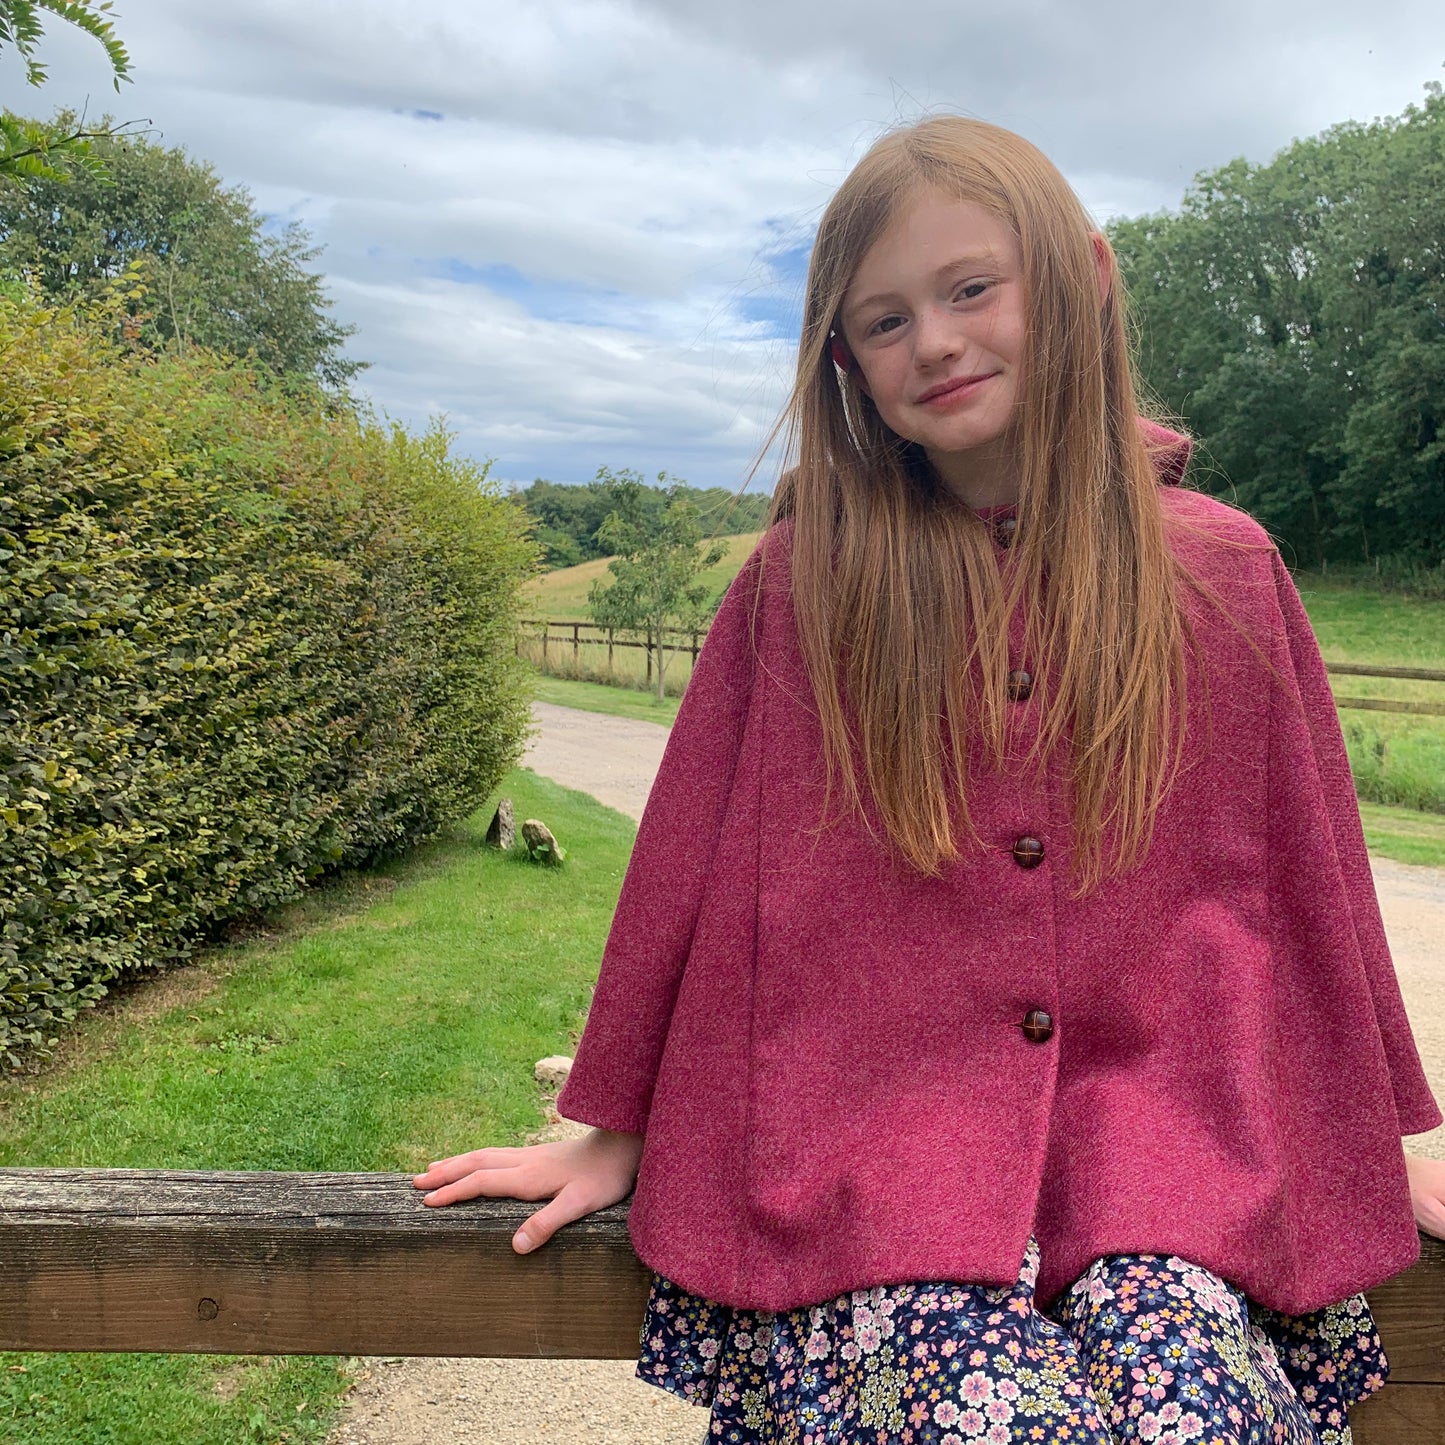 'Iris' Girls Rhubarb 100% Shetland Wool hooded cape  - Hand Made in England